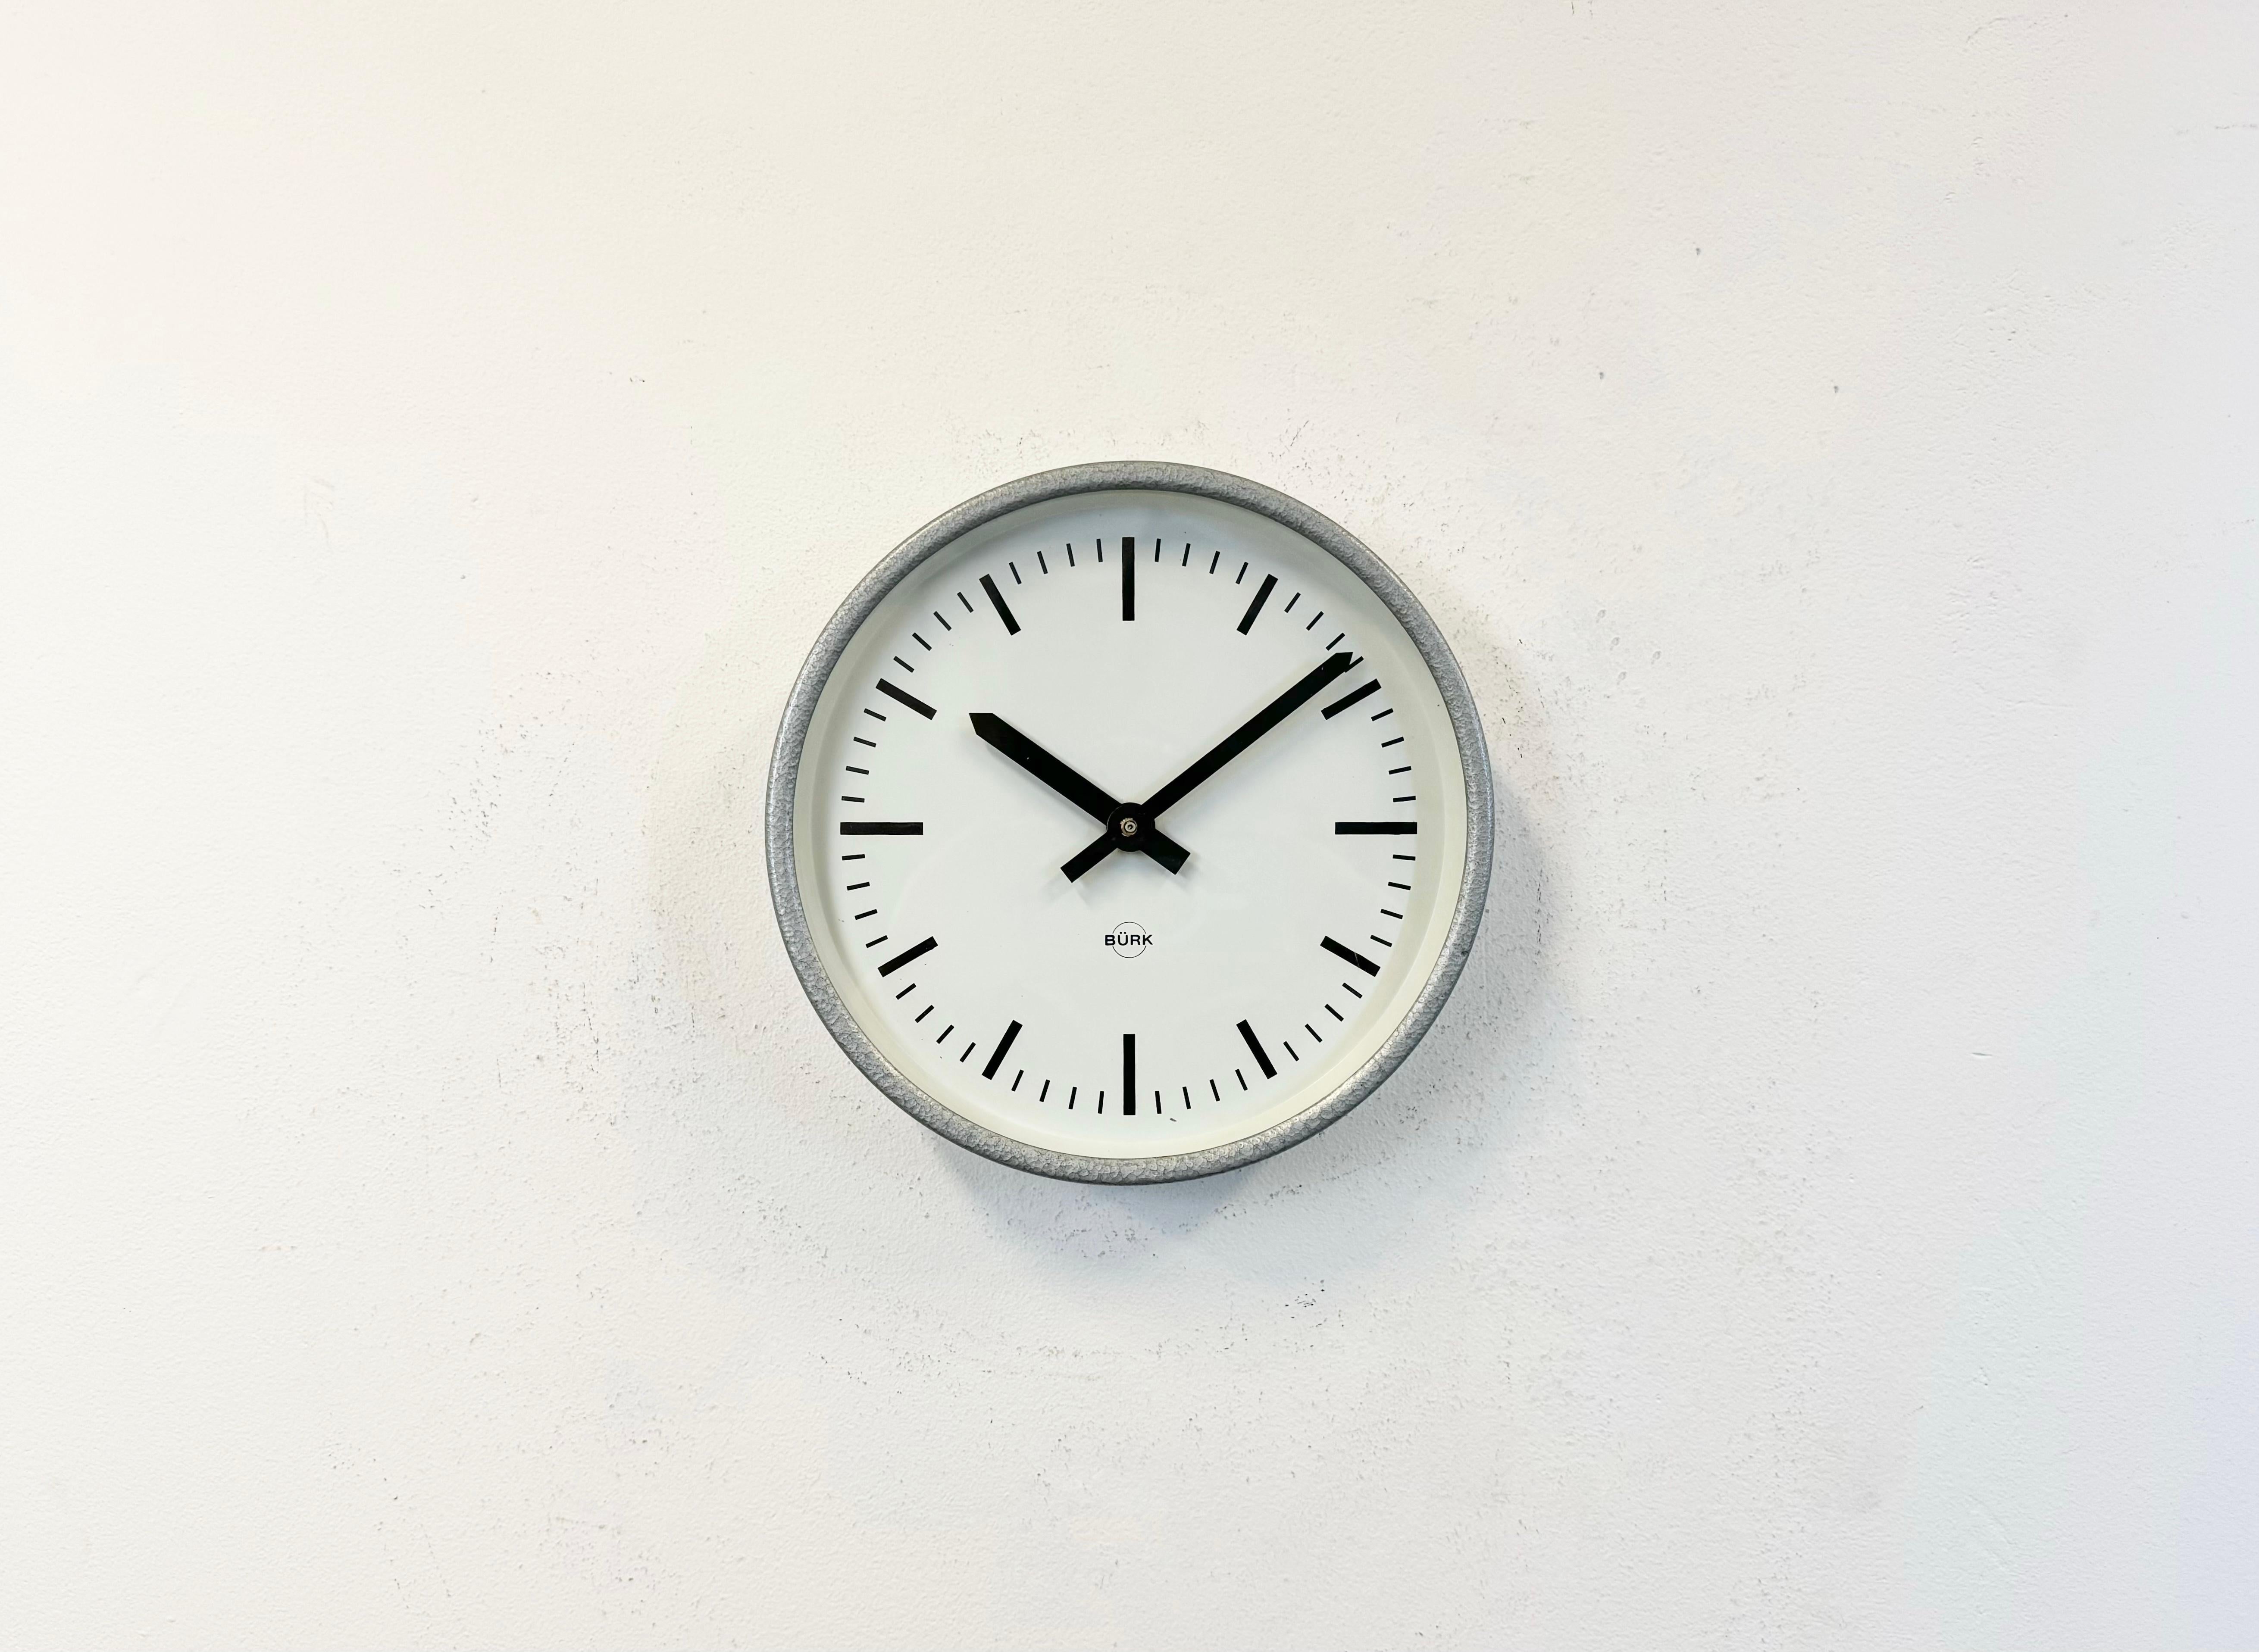 L'horloge murale Burk a été fabriquée en Allemagne de l'Ouest dans les années 1970. Elle se compose d'un cadre en fer gris, d'un cadran en métal, d'aiguilles en aluminium et d'un couvercle en verre transparent. La pièce a été convertie en un